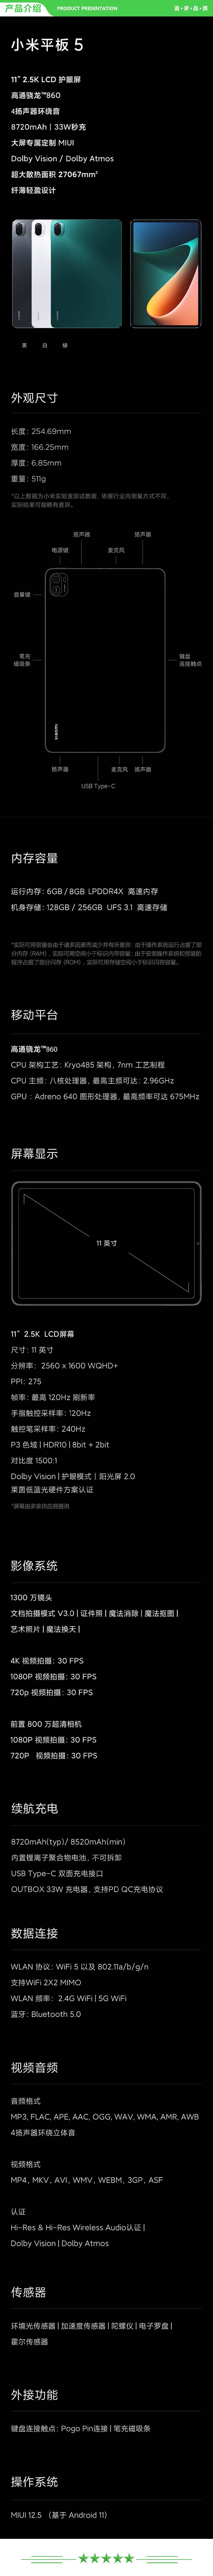 小米 xiaomi 平板5 平板电脑（11英寸2.5K高清 120Hz 骁龙860 8G+256GB 33W快充 杜比影音娱乐办公 绿色）.jpg